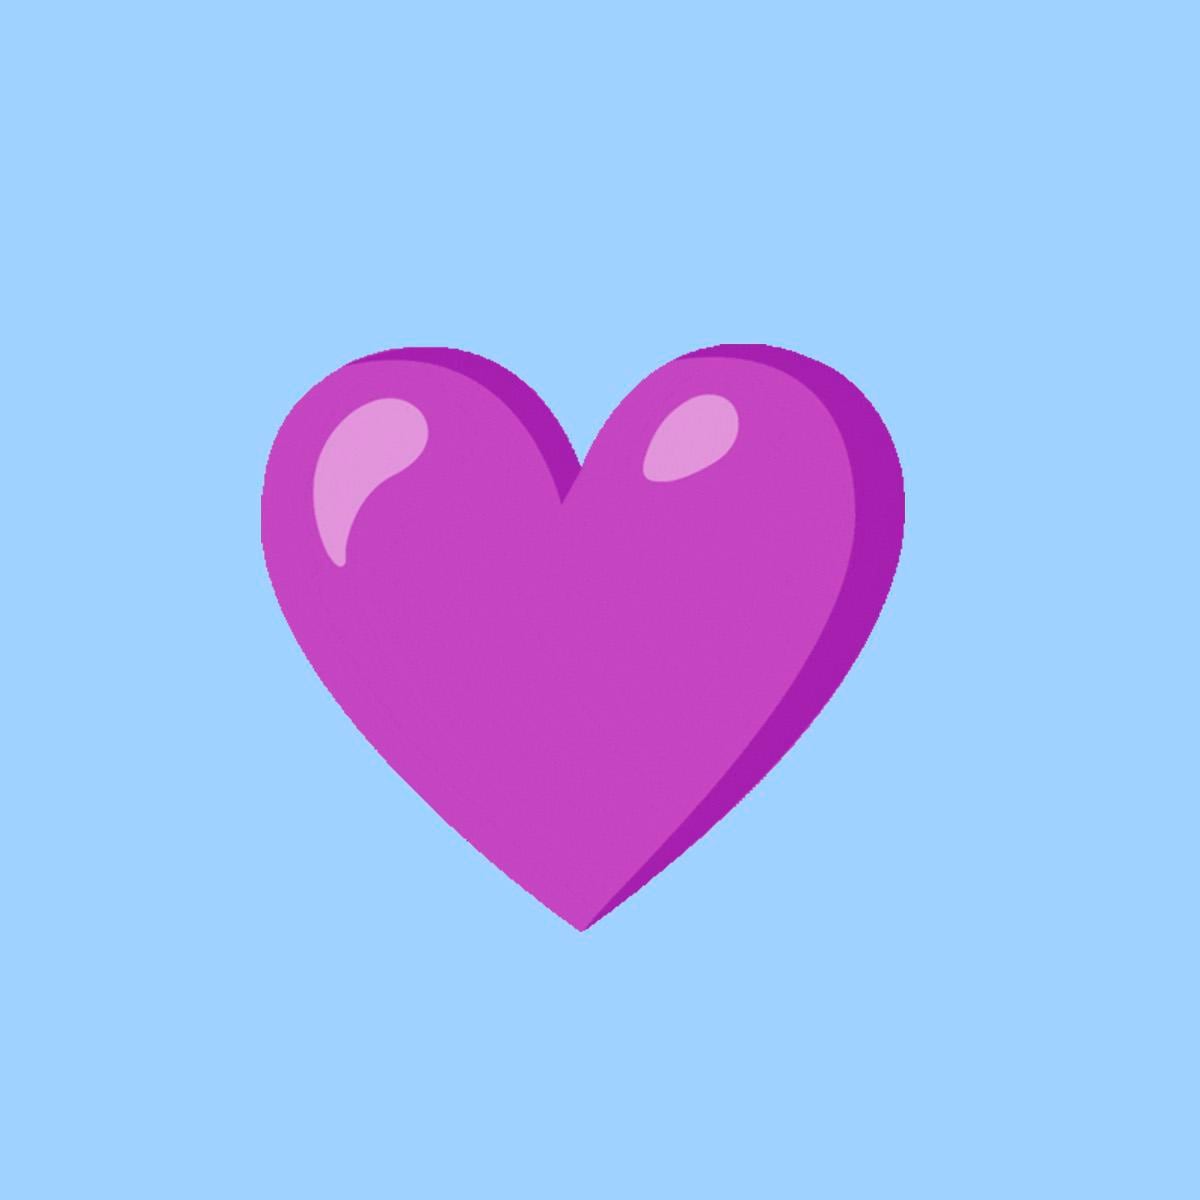 WhatsApp Viral: conoce qué significa el corazón morado en la aplicación, Truco, Meaning, Purple heart, Aplicaciones, Apps, NNDA, NNRT, DEPOR-PLAY